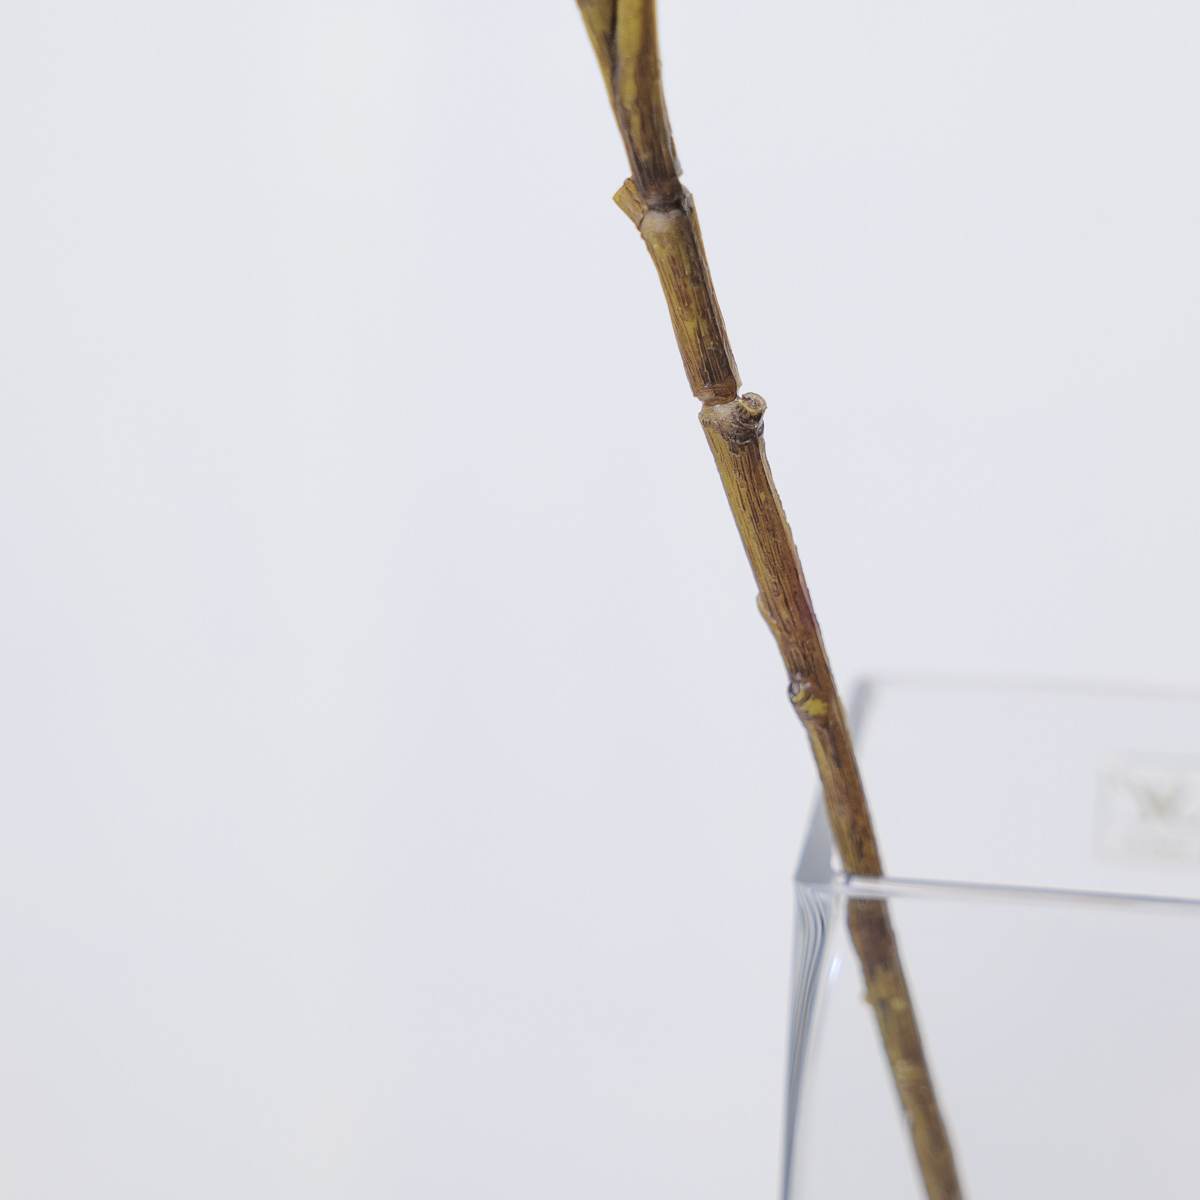 인조나무가지 나뭇잎조화 엔카이셔스 잎사귀 나무가지 110cm, 그린 나뭇가지 상품 다중이미지 썸네일